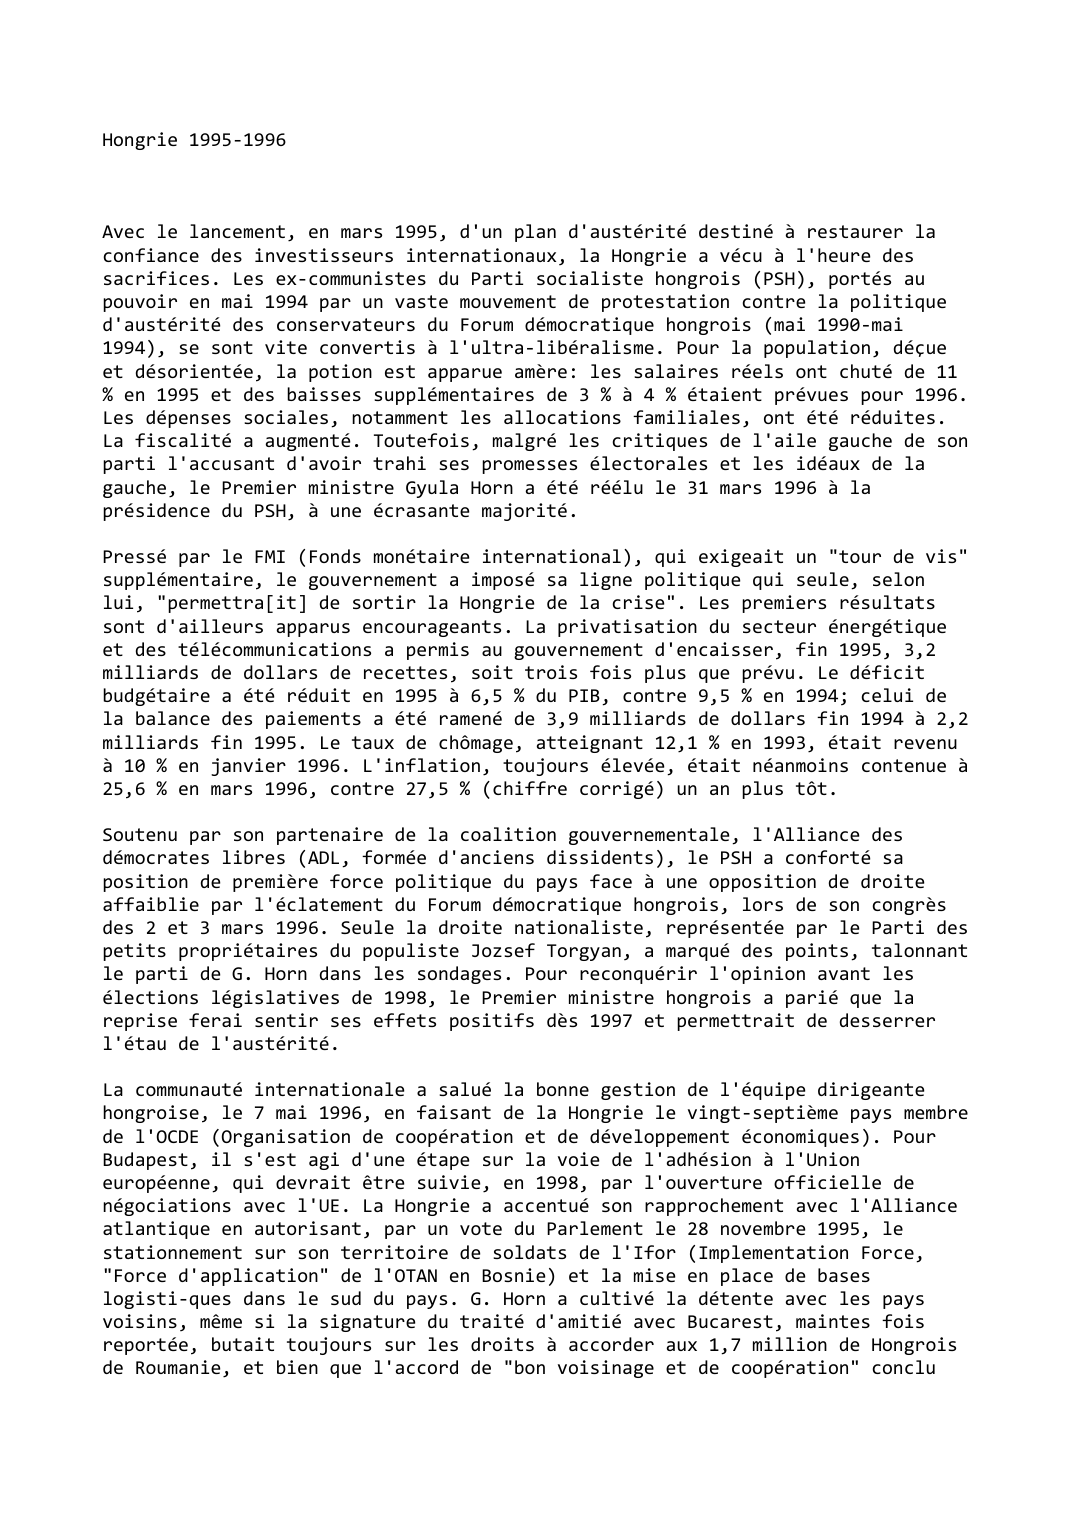 Prévisualisation du document Hongrie (1995-1996)